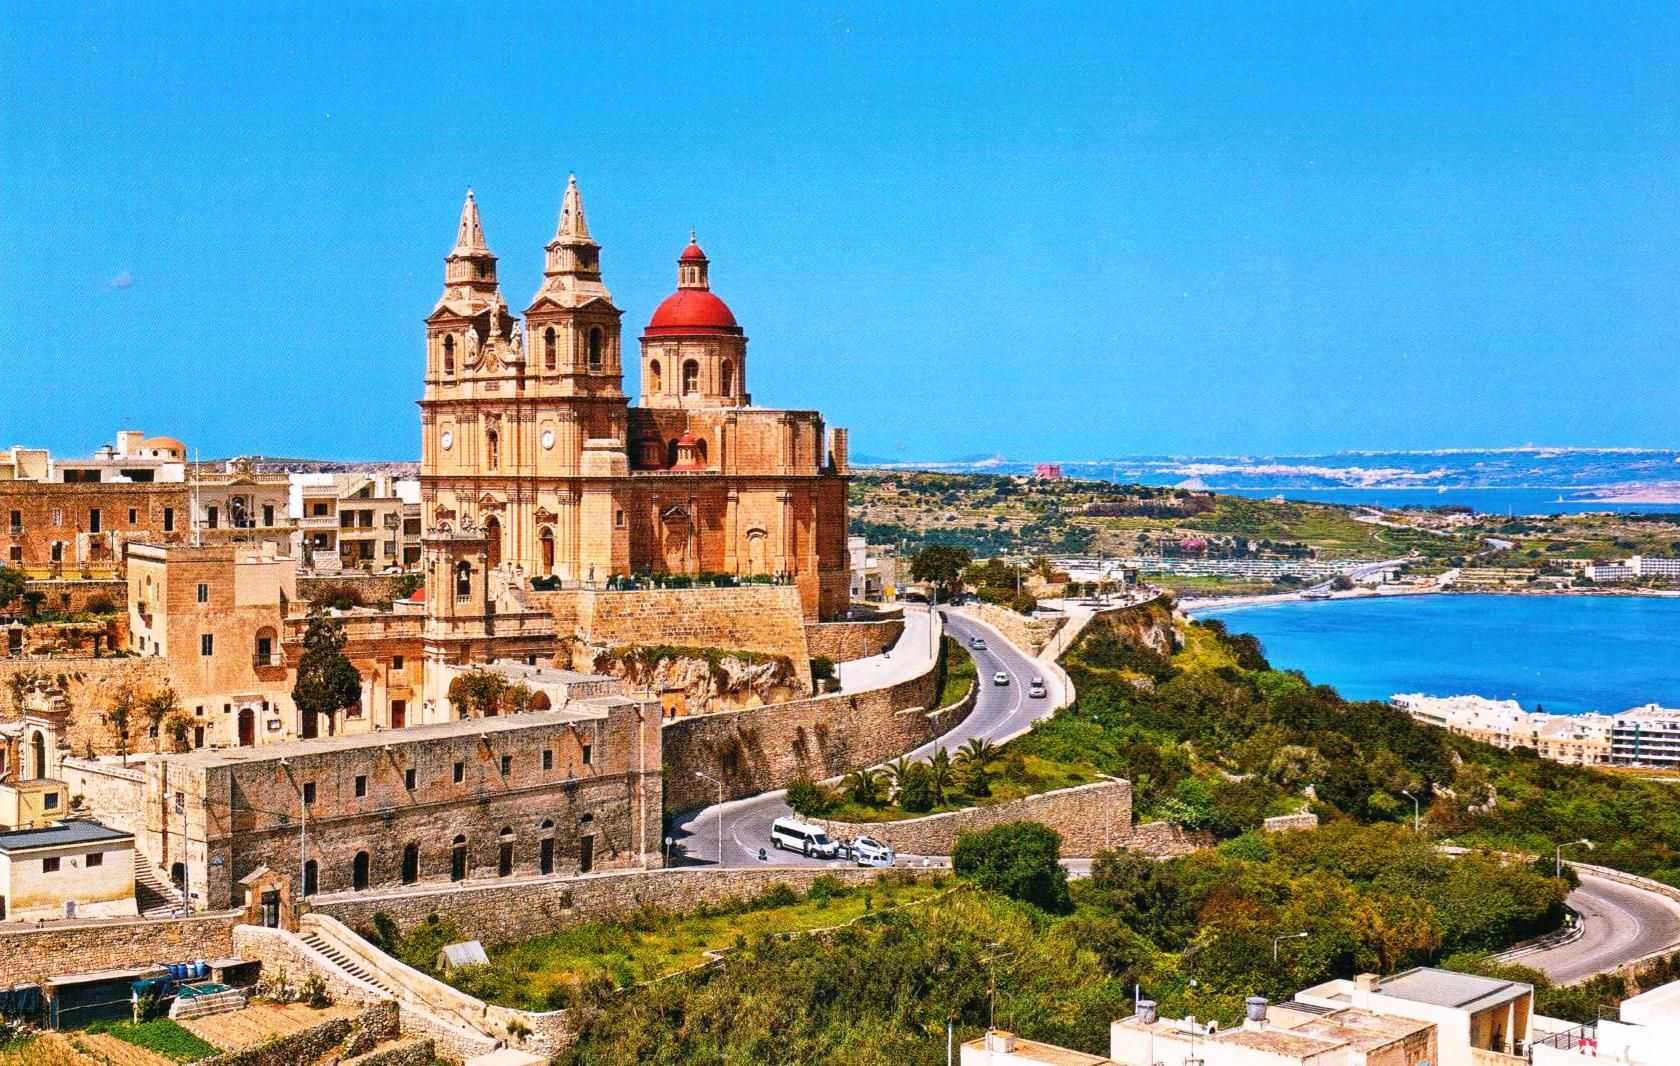 Моста - город на острове Мальта, который является густонаселенным и, по местным меркам, одним из самых больших на Мальте